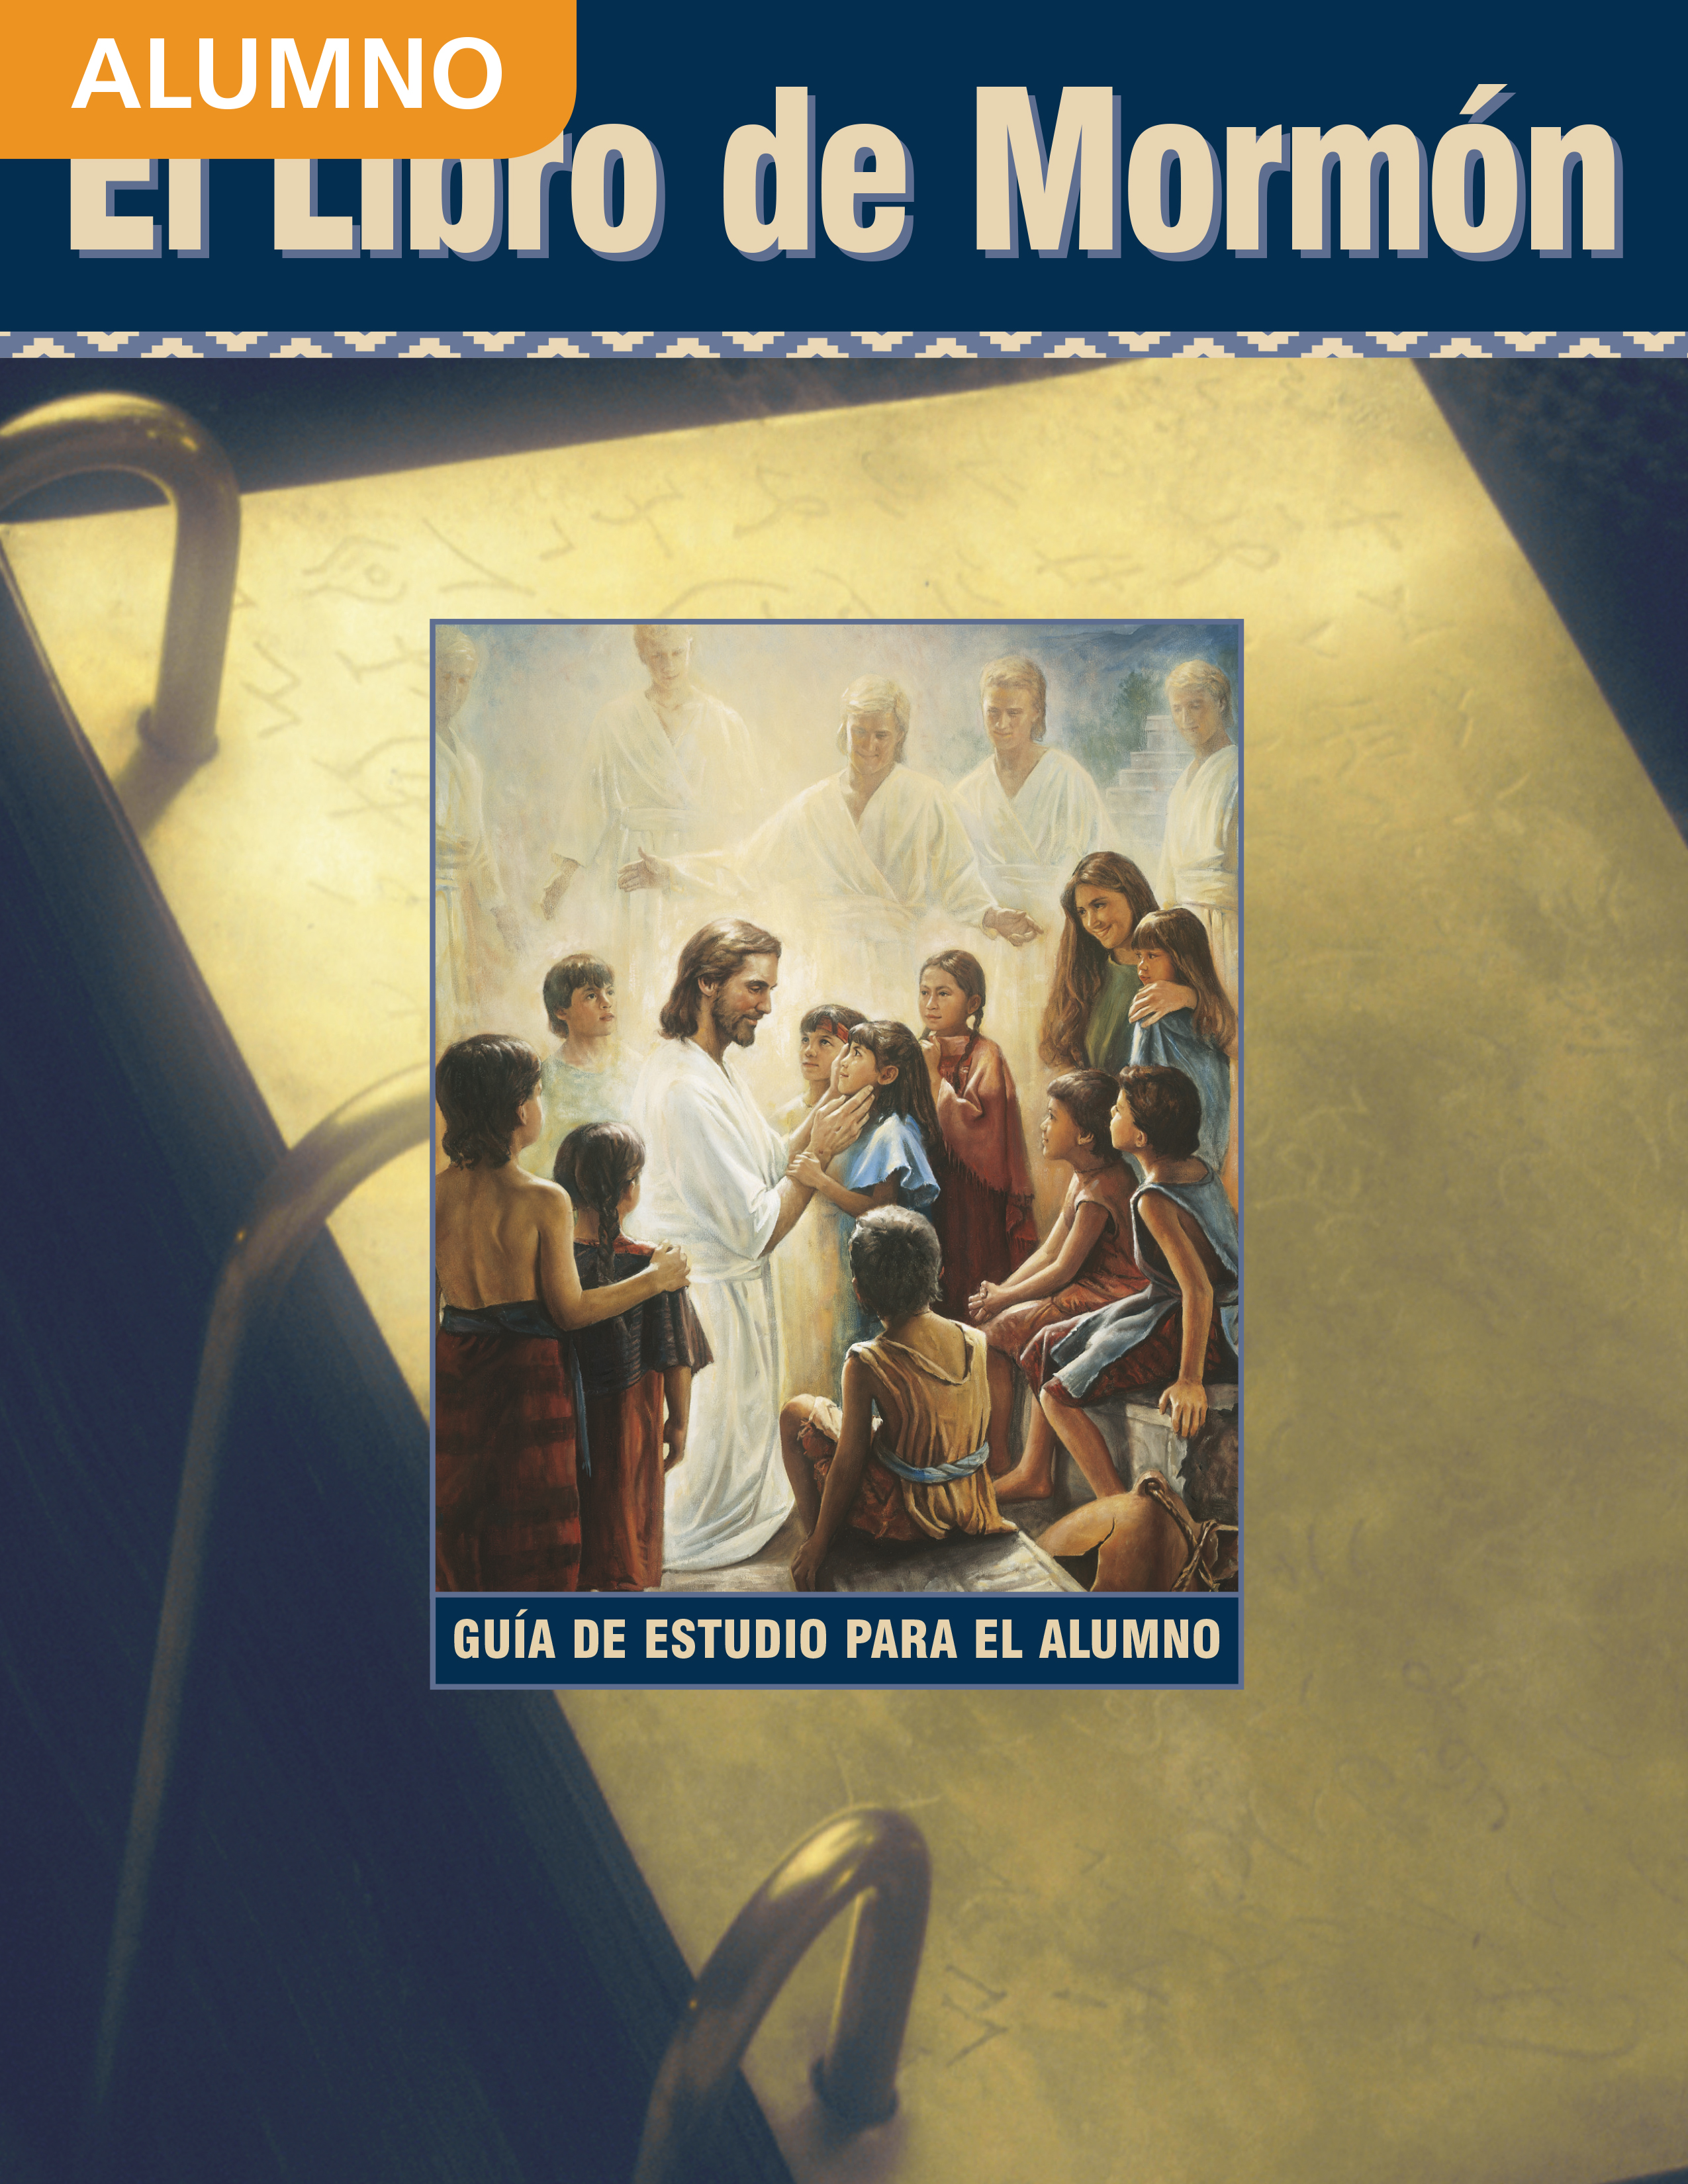 El Libro de Mormón: Guía de estudio para el alumno de Seminario